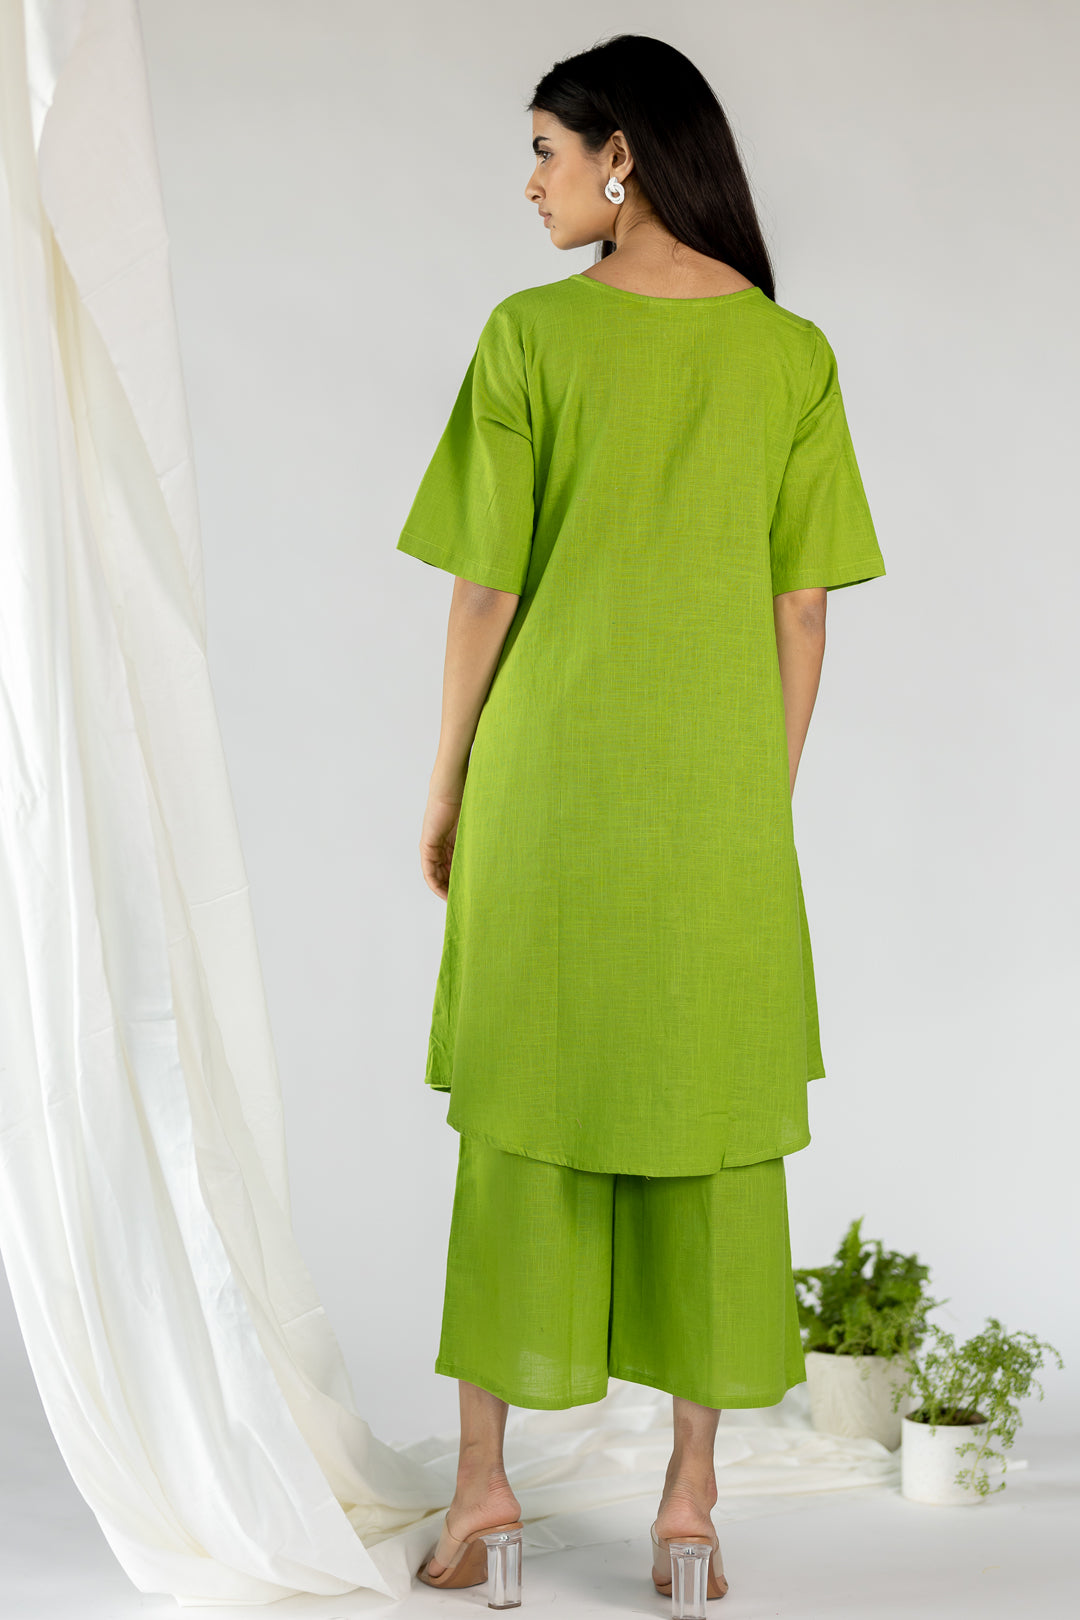 Palm green tunic set